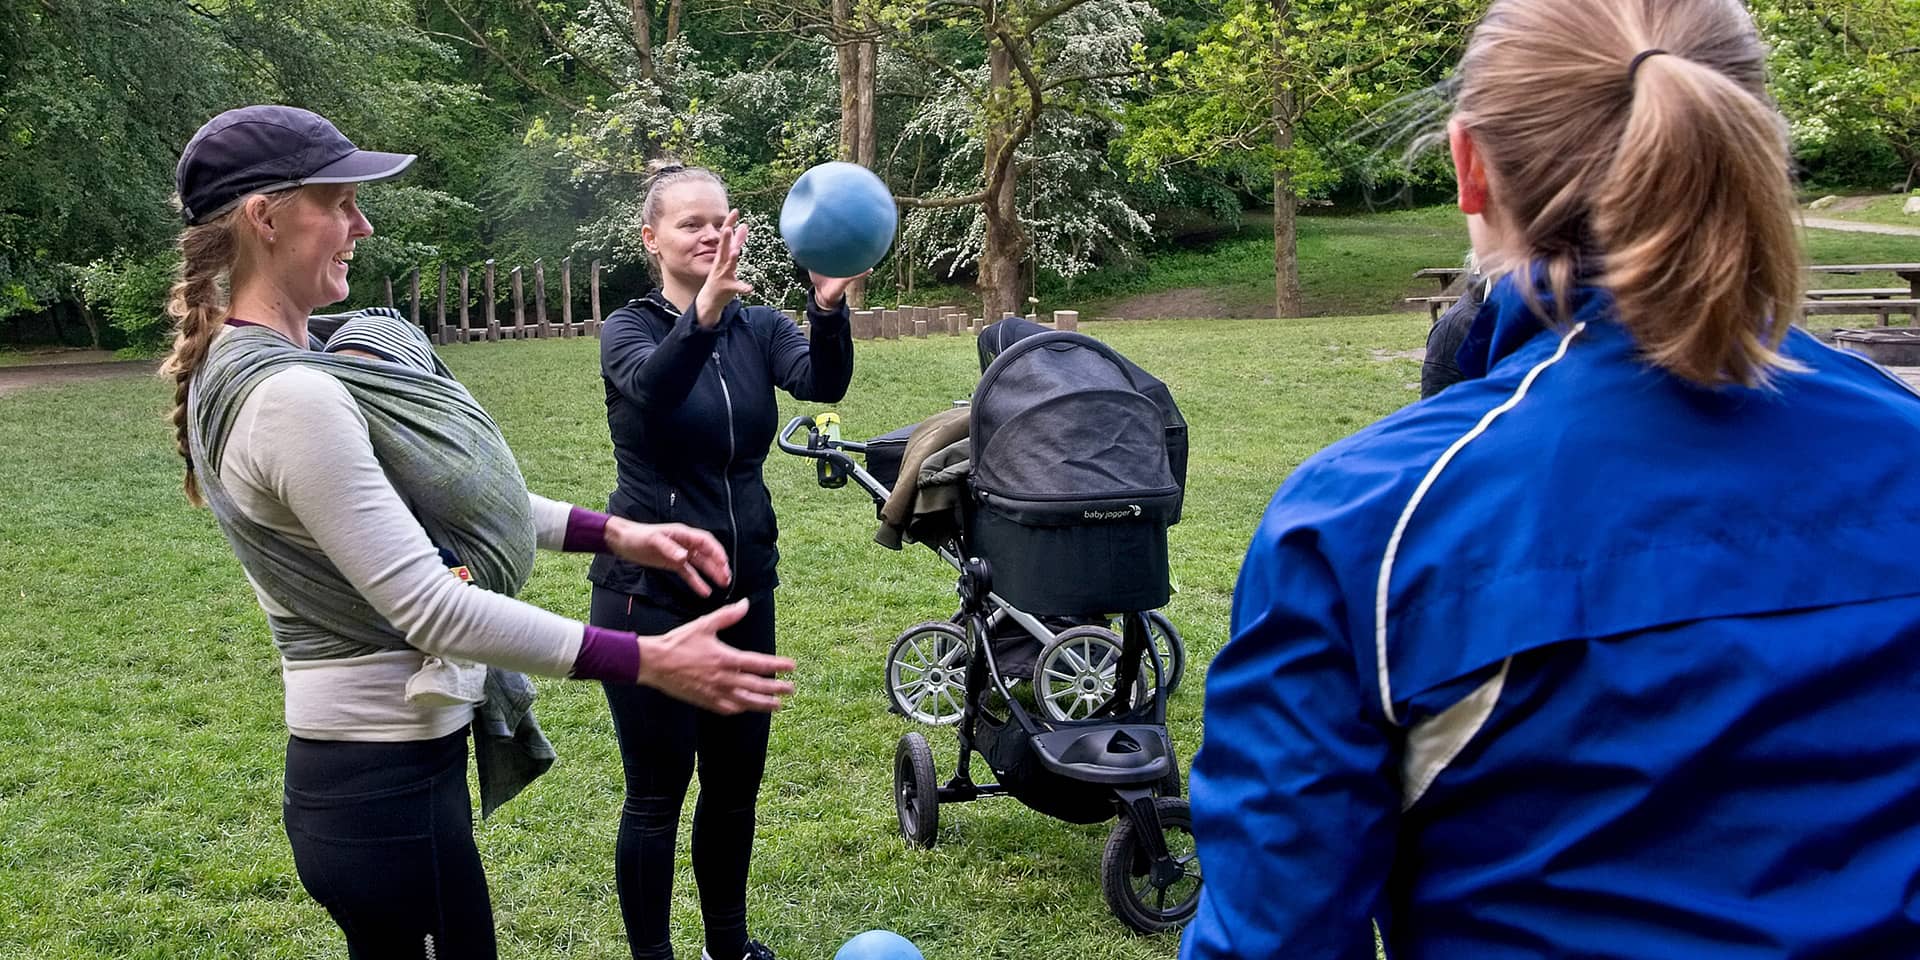  'Mor og barn træning i naturen' hos FOF Aarhus, underviser Dorte Wahlberg